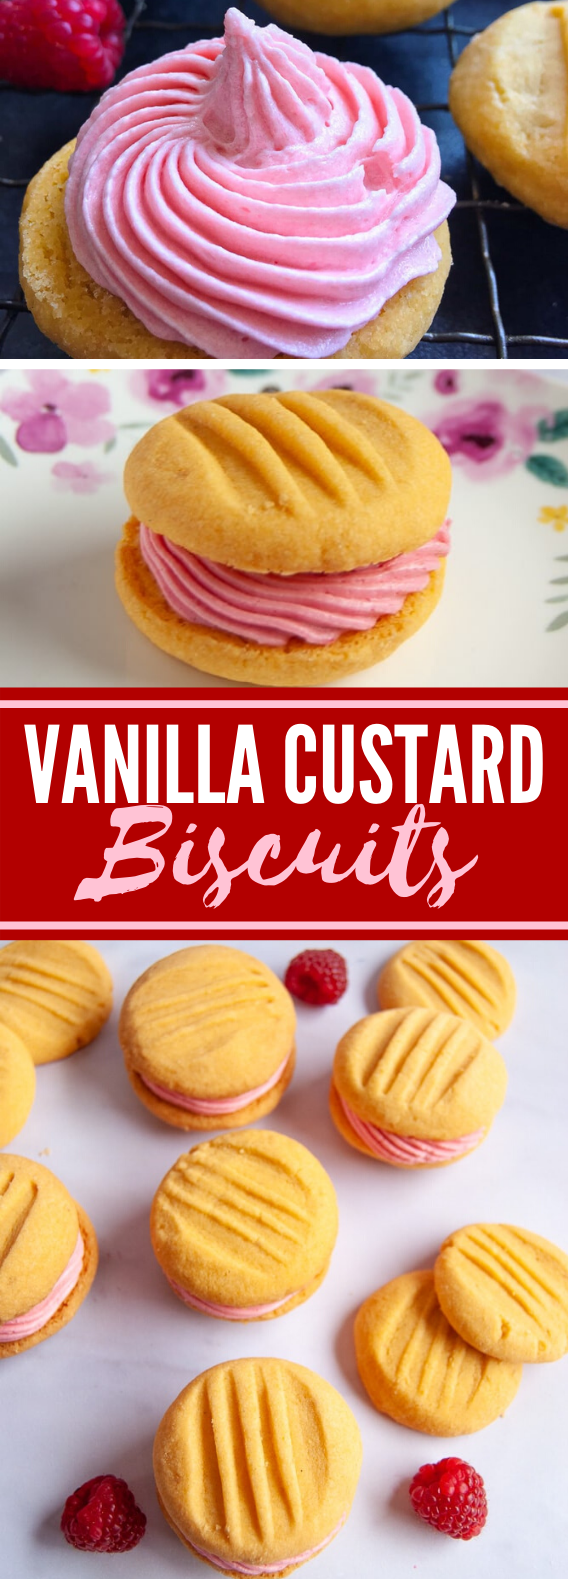 VANILLA CUSTARD BISCUITS #desserts #simplerecipe #biscuits #sweets #cookies